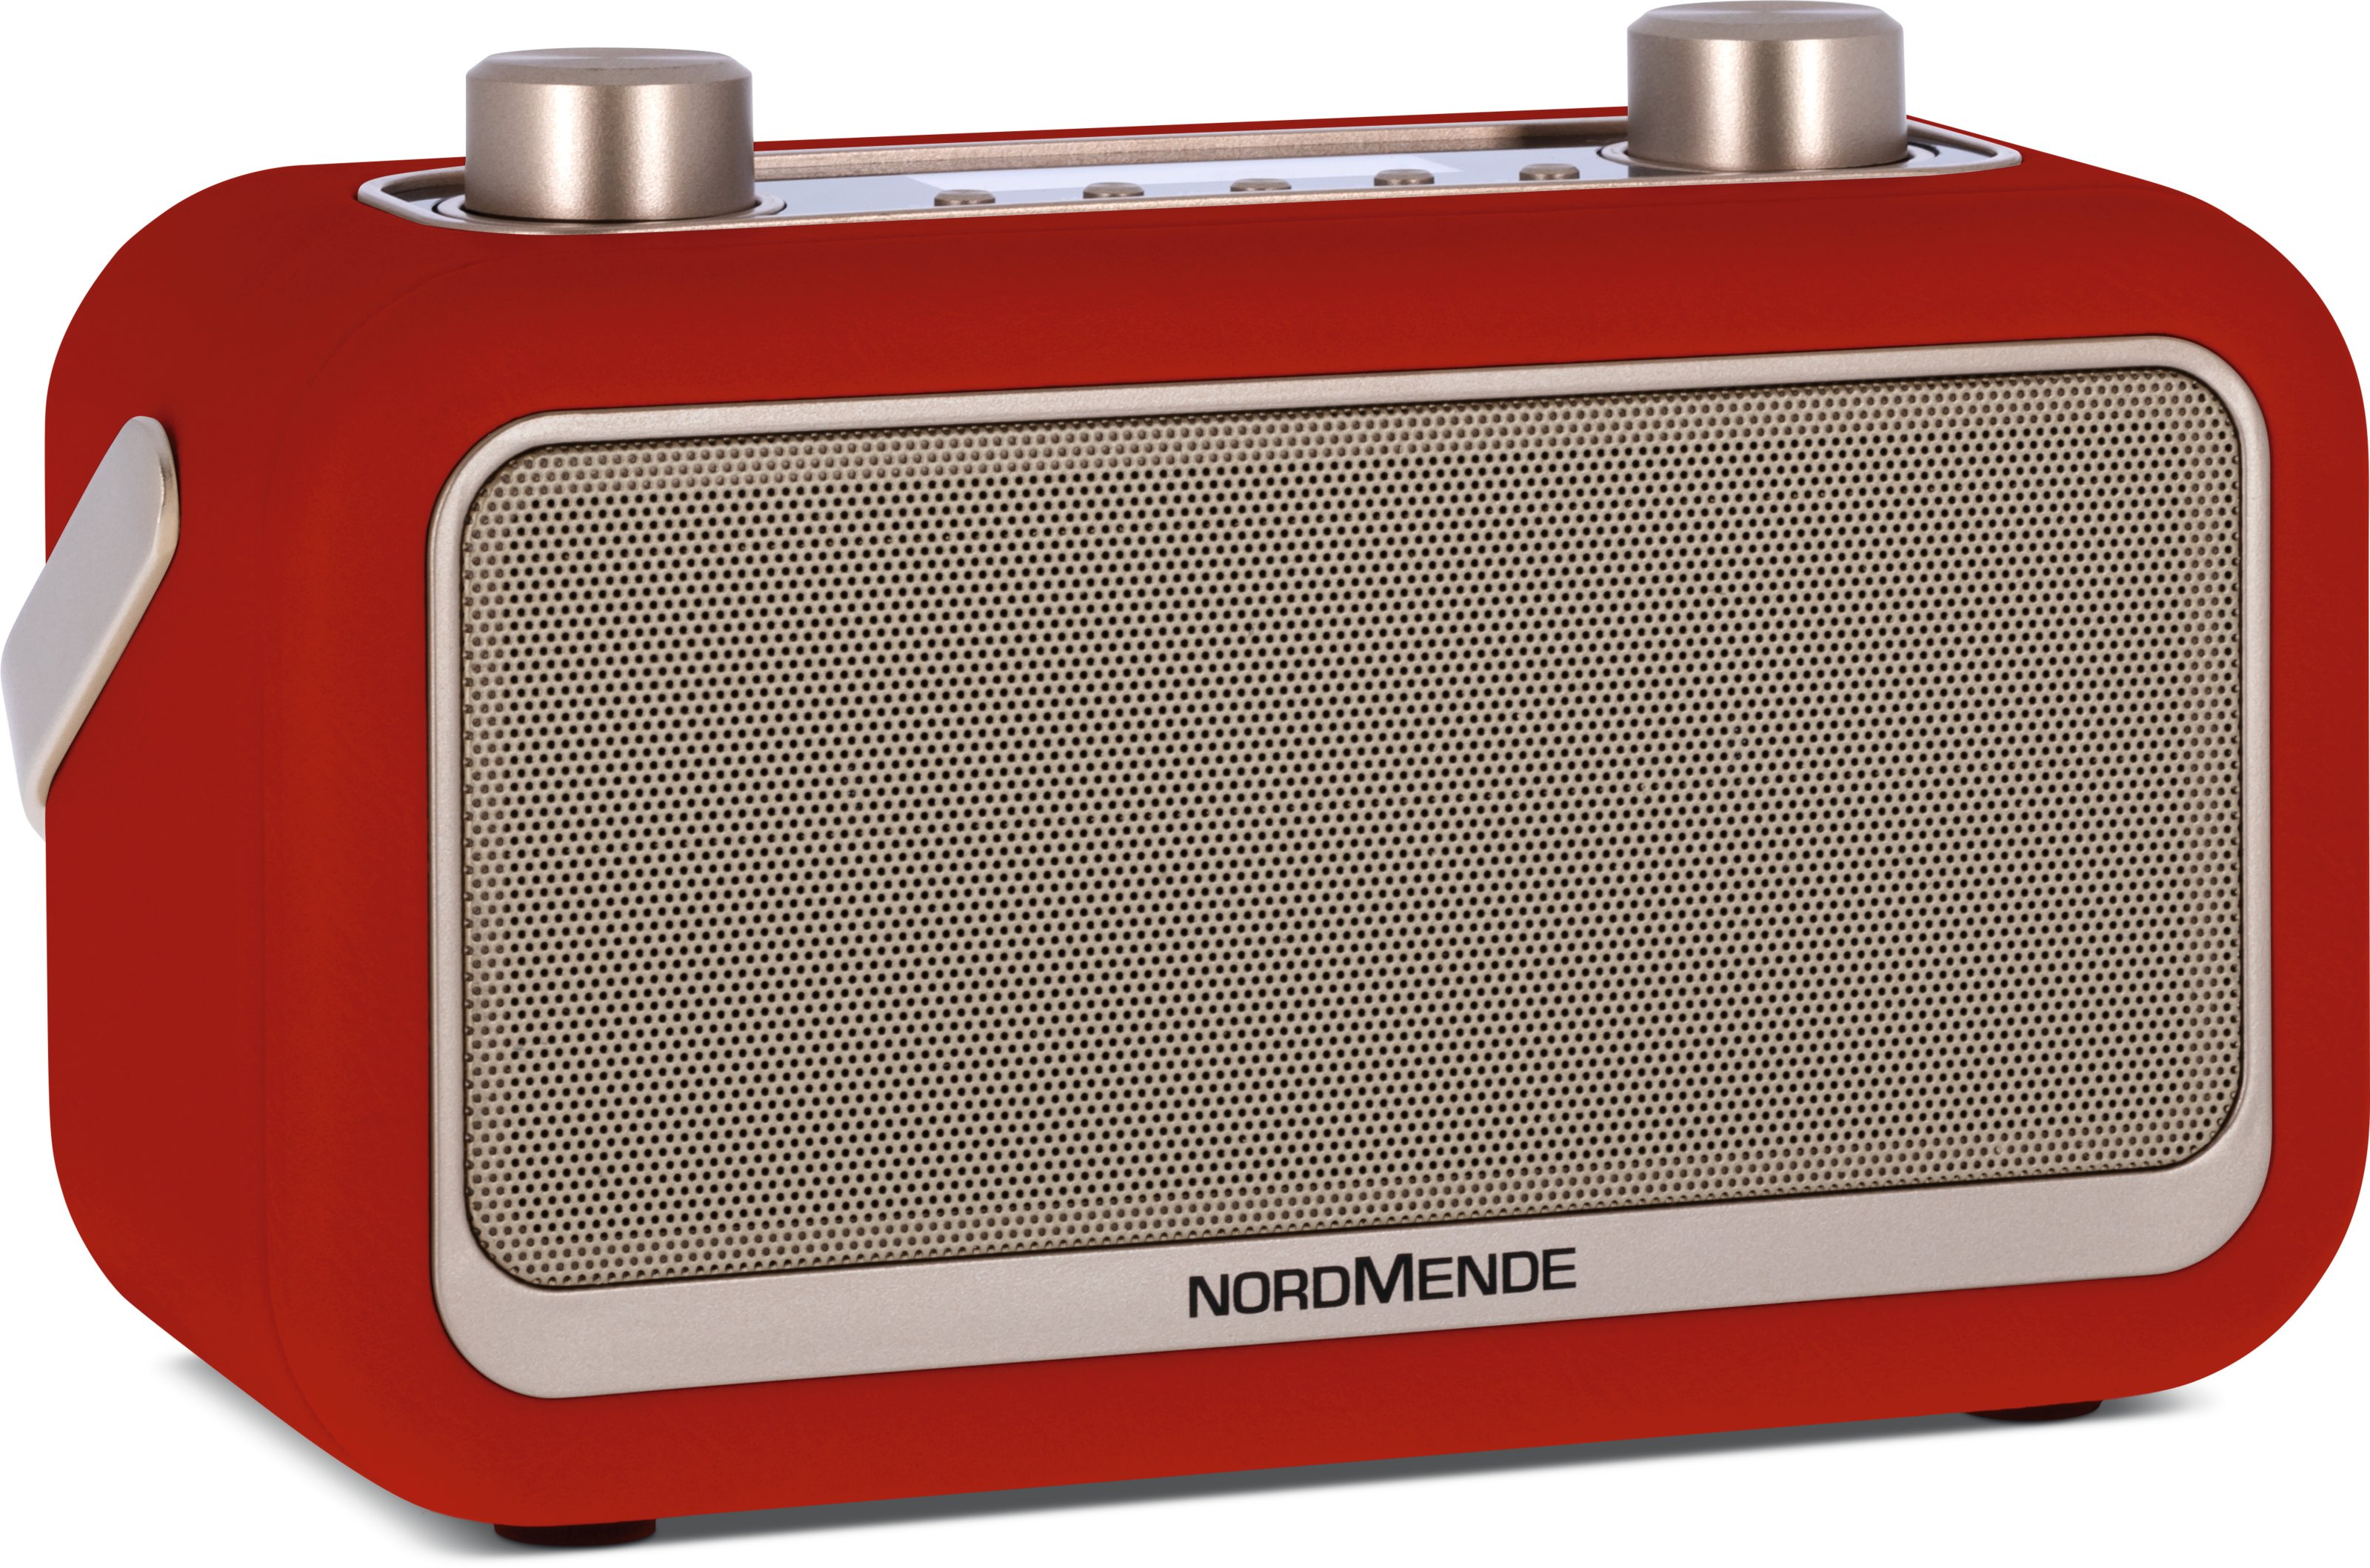 NORDMENDE Transita DAB+/UKW DAB, Portables DAB+, Bluetooth, FM, mit Bluetooth-Audiostreaming, 30 FM, Radio AM, DAB, Rot